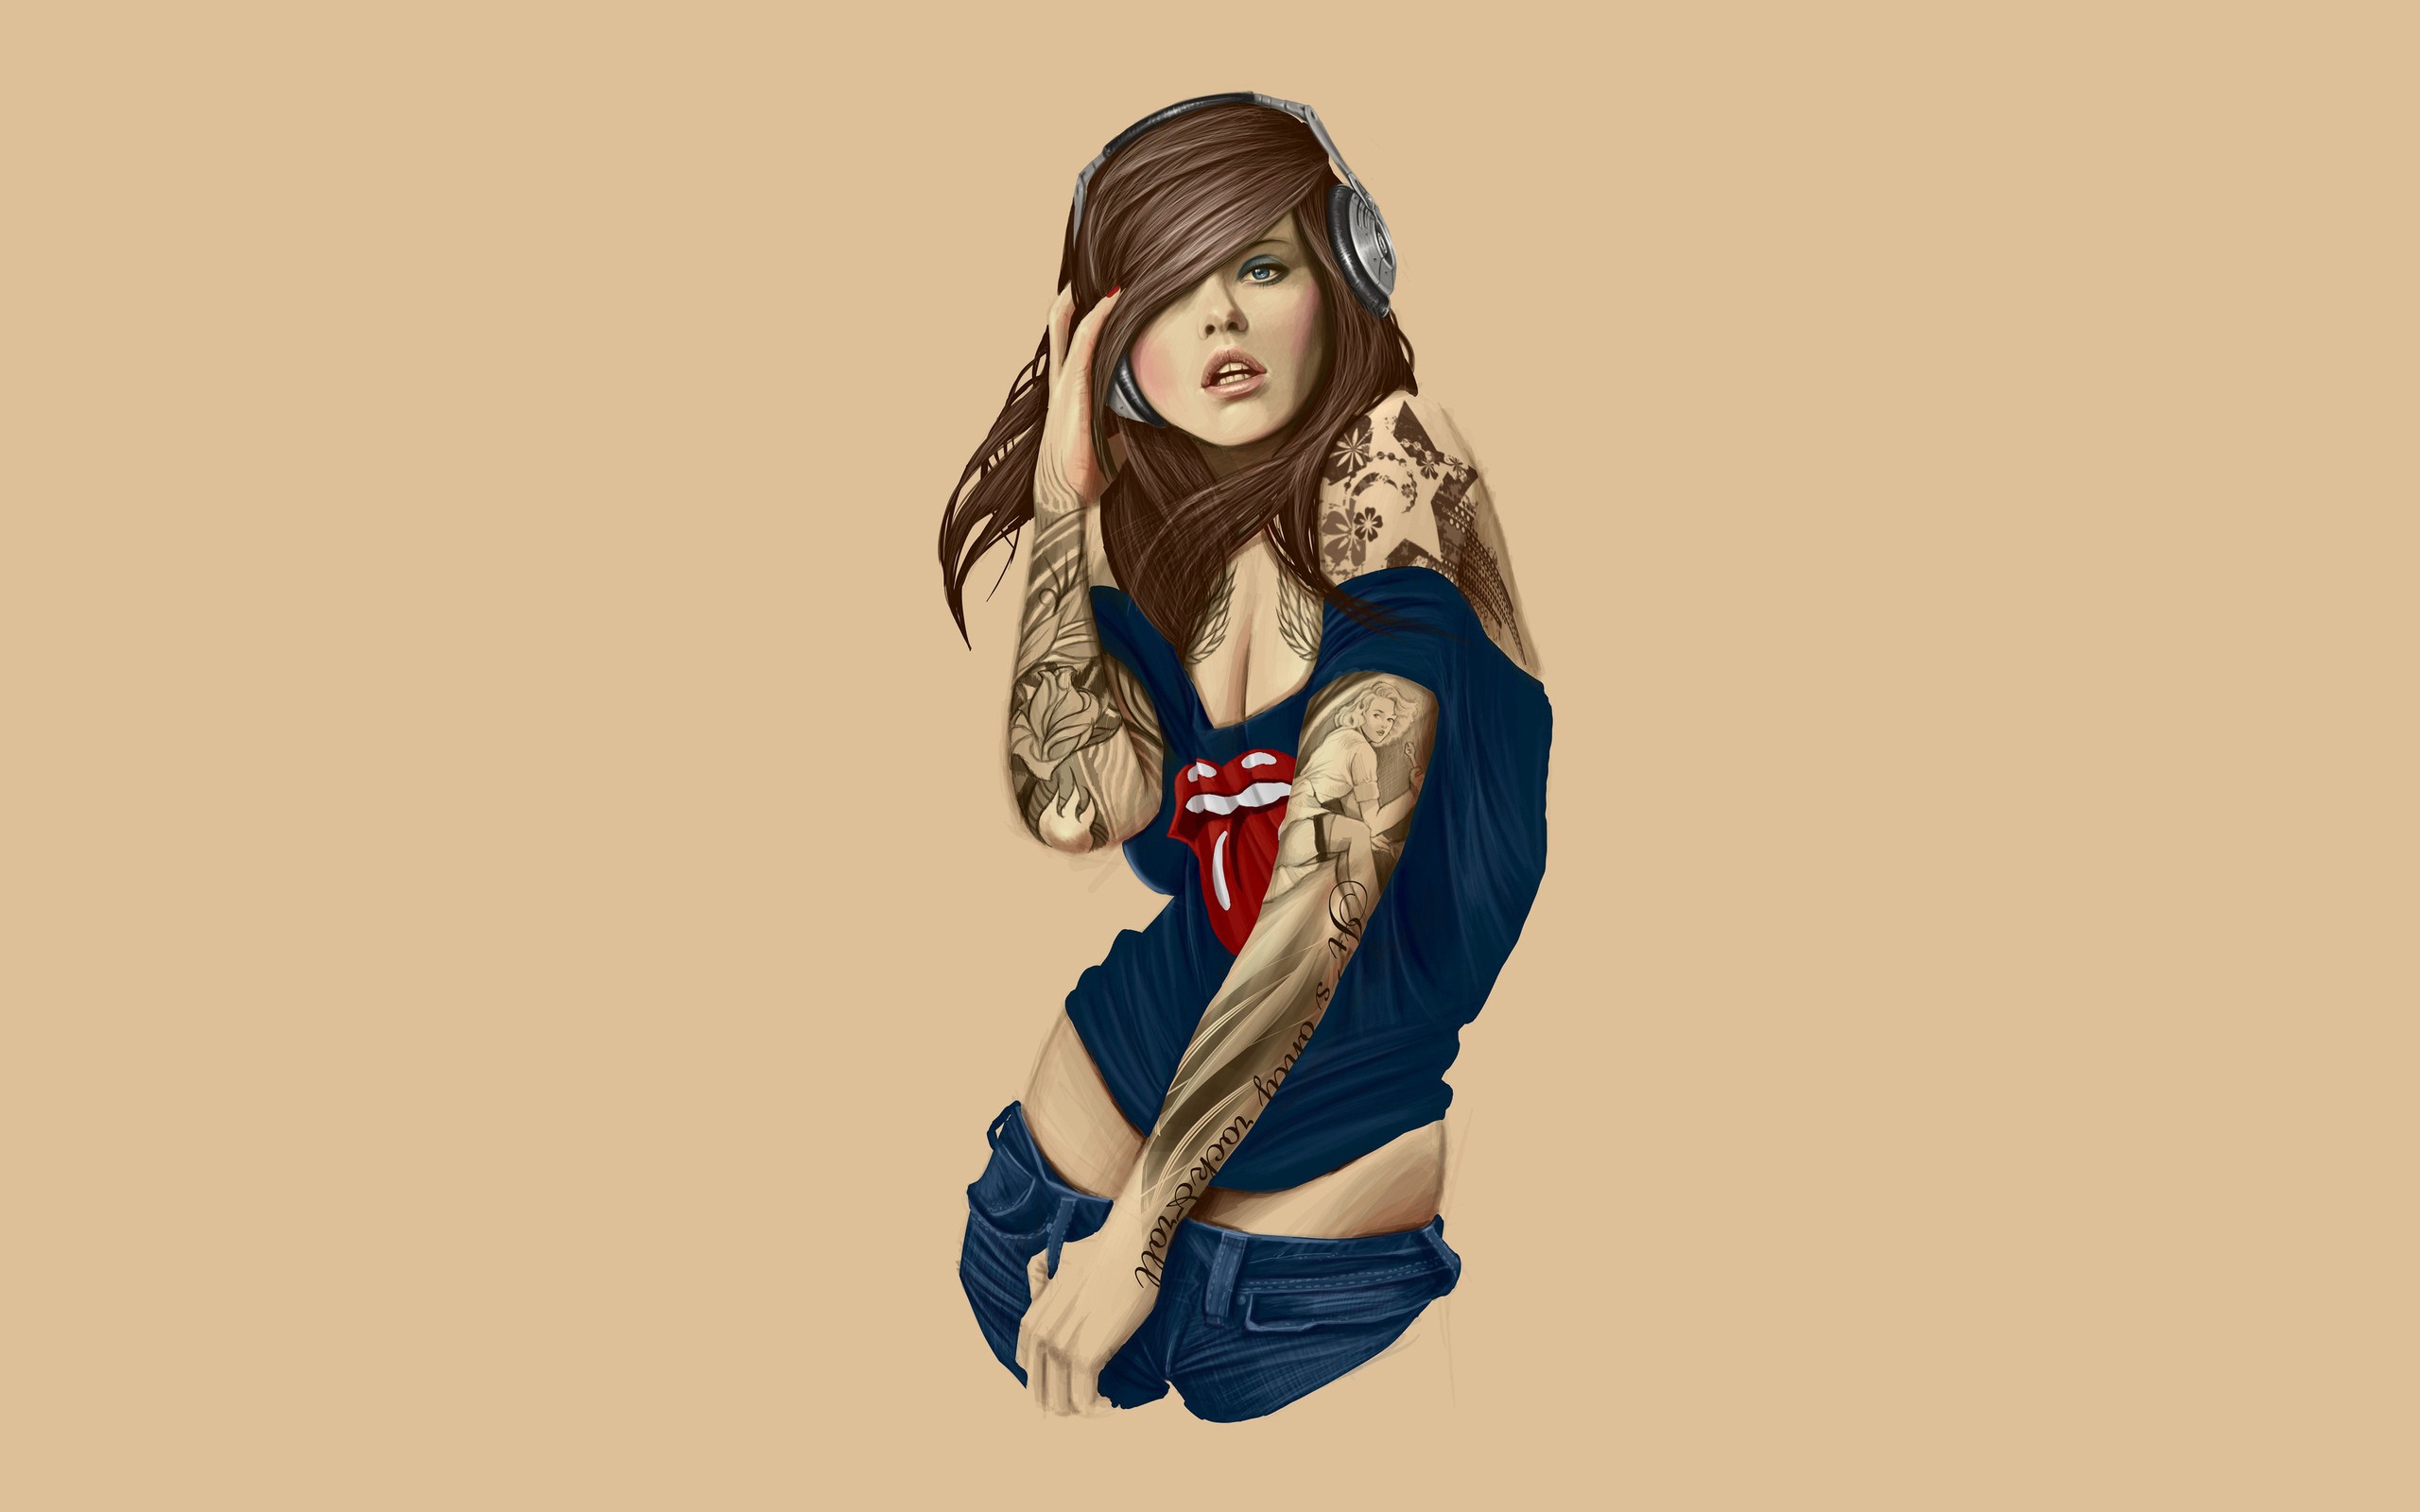 Download hd wallpaper tattoo art - Girls With Tattoo Art Wallpaper ...